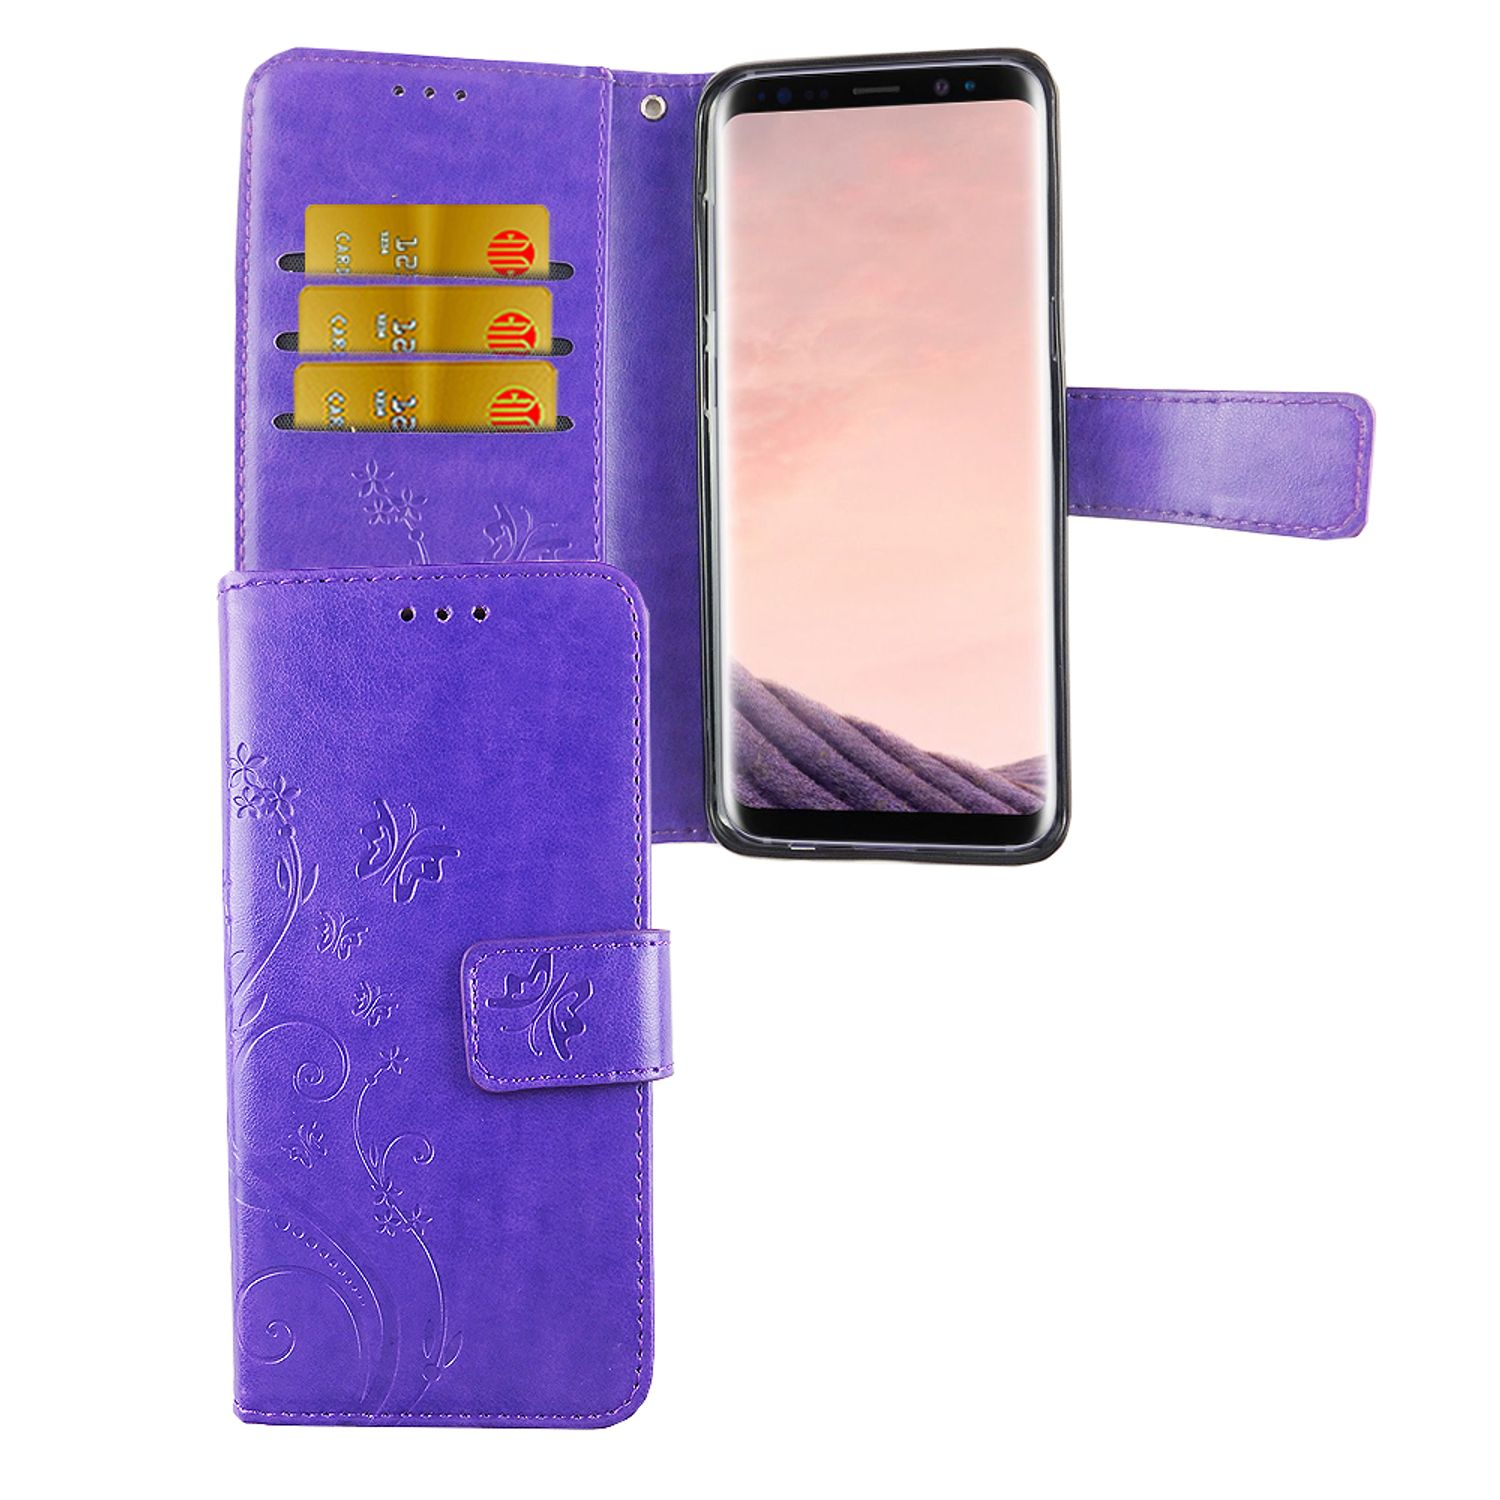 Samsung, Violett S8, KÖNIG DESIGN Galaxy Schutzhülle, Bookcover,